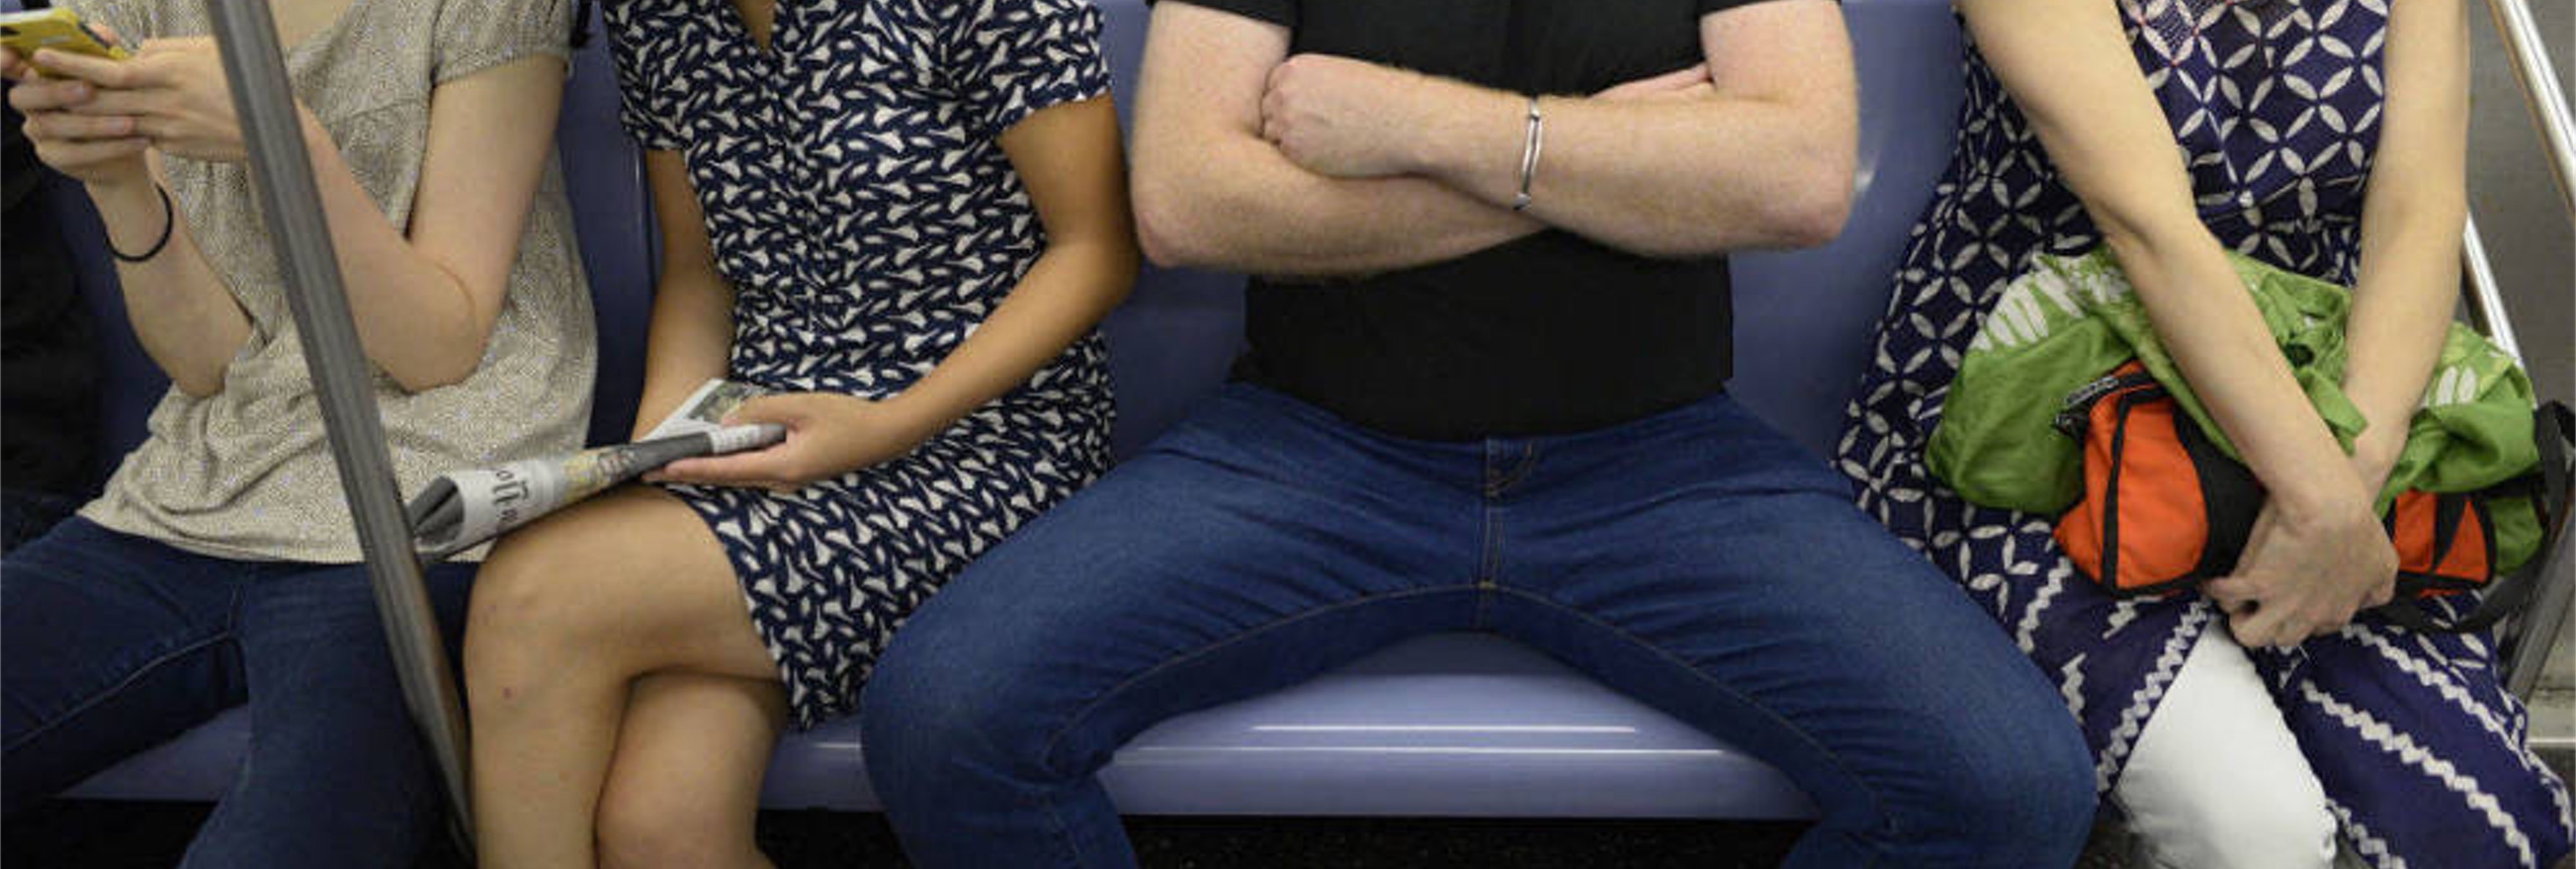 Una activista rusa rocía lejía sobre los hombres que hacen 'manspreading' en el metro